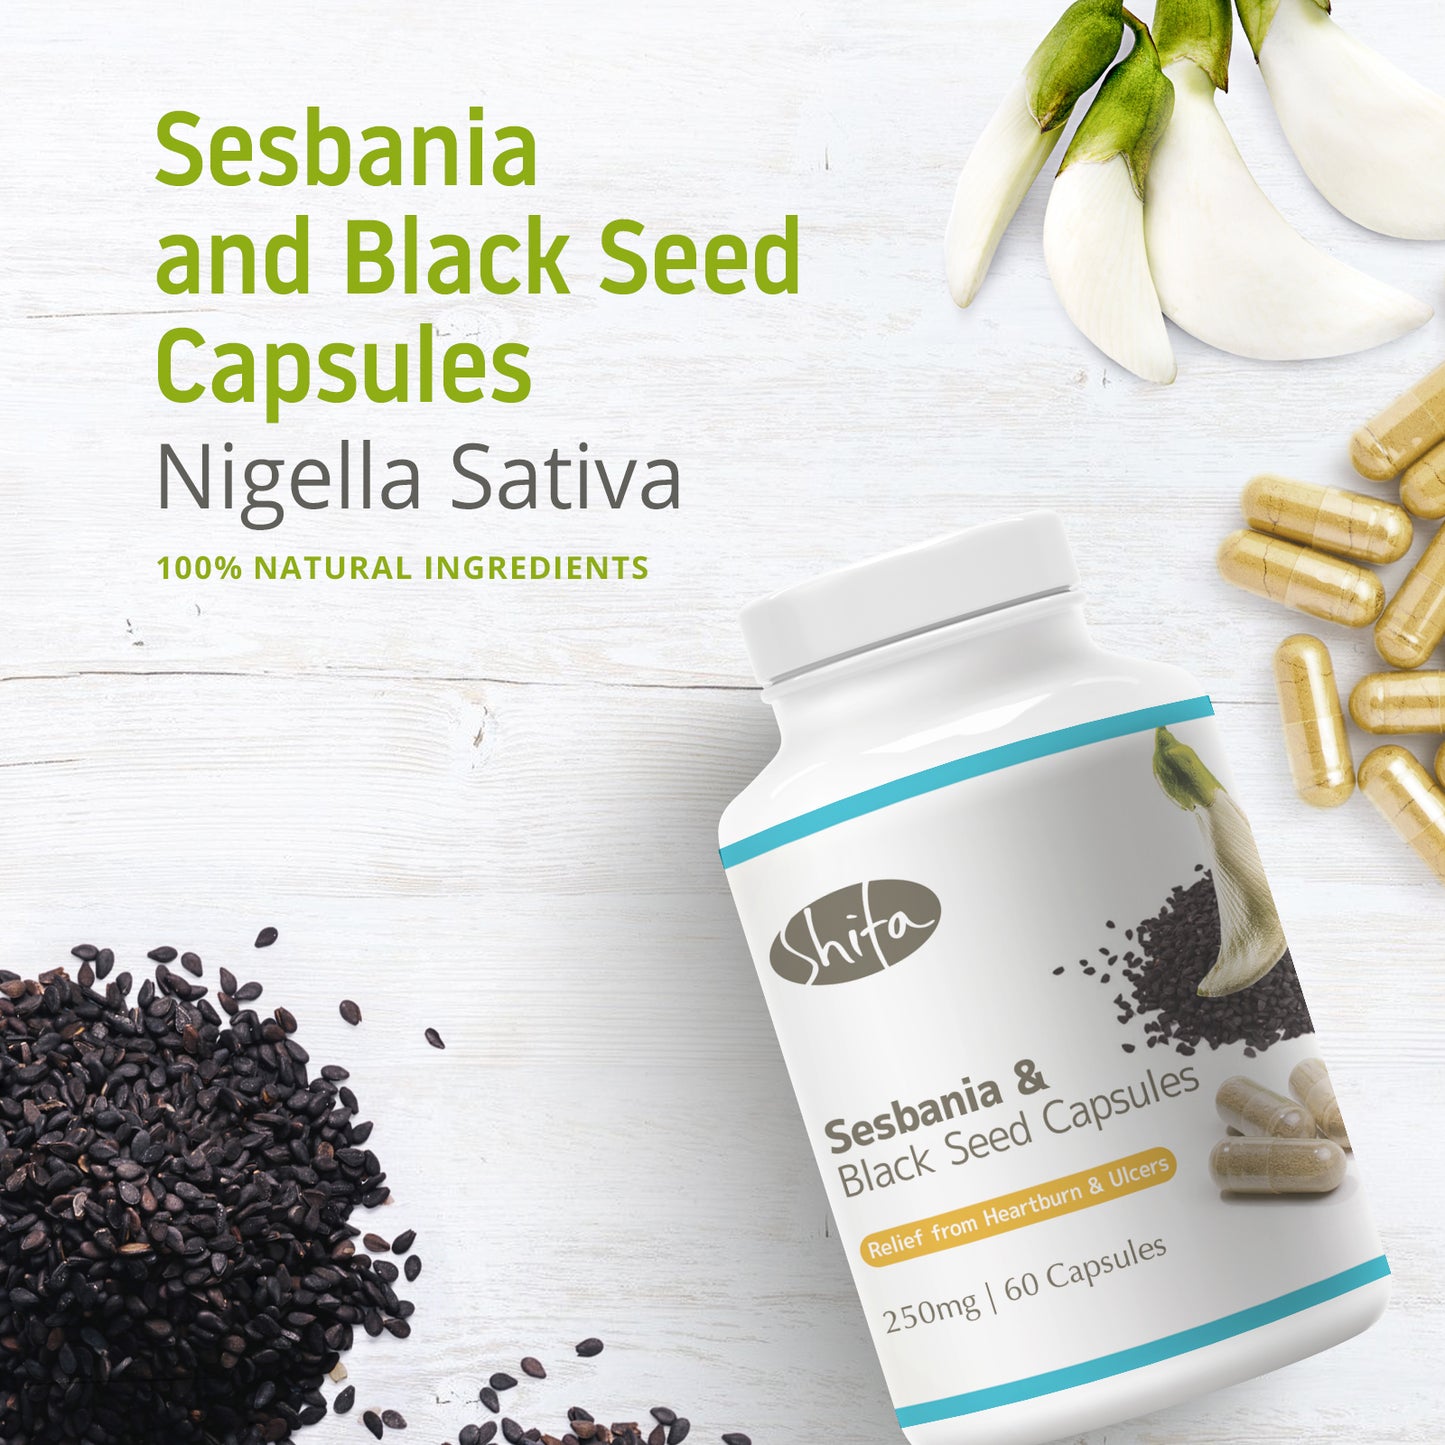 Sesbania & Black Seed Capsules (250mg | 60 Caps)